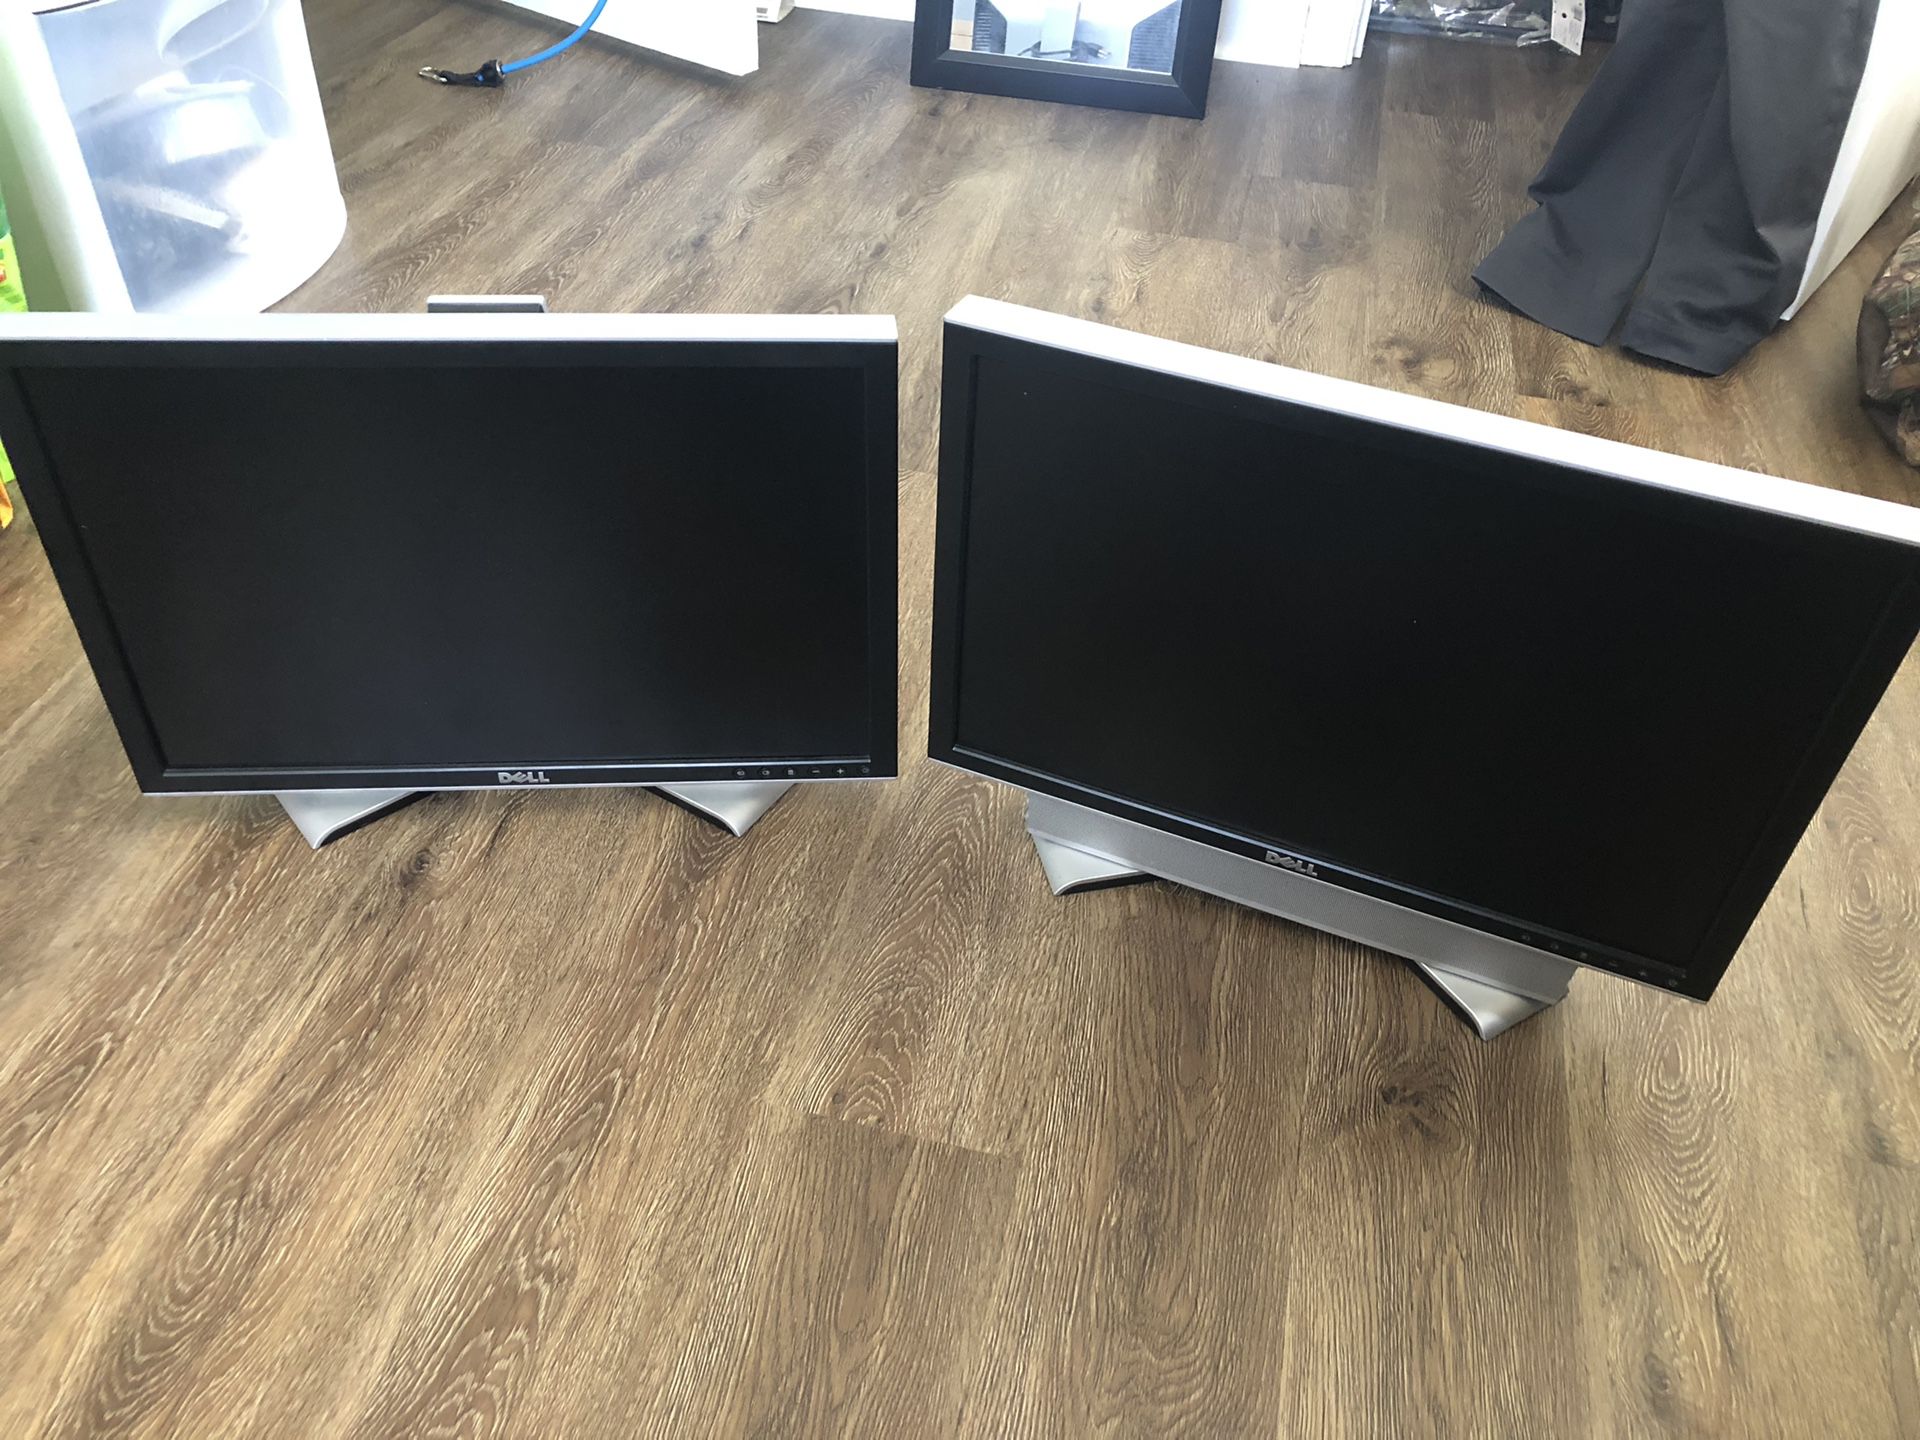 Two 20” Dell Monitors